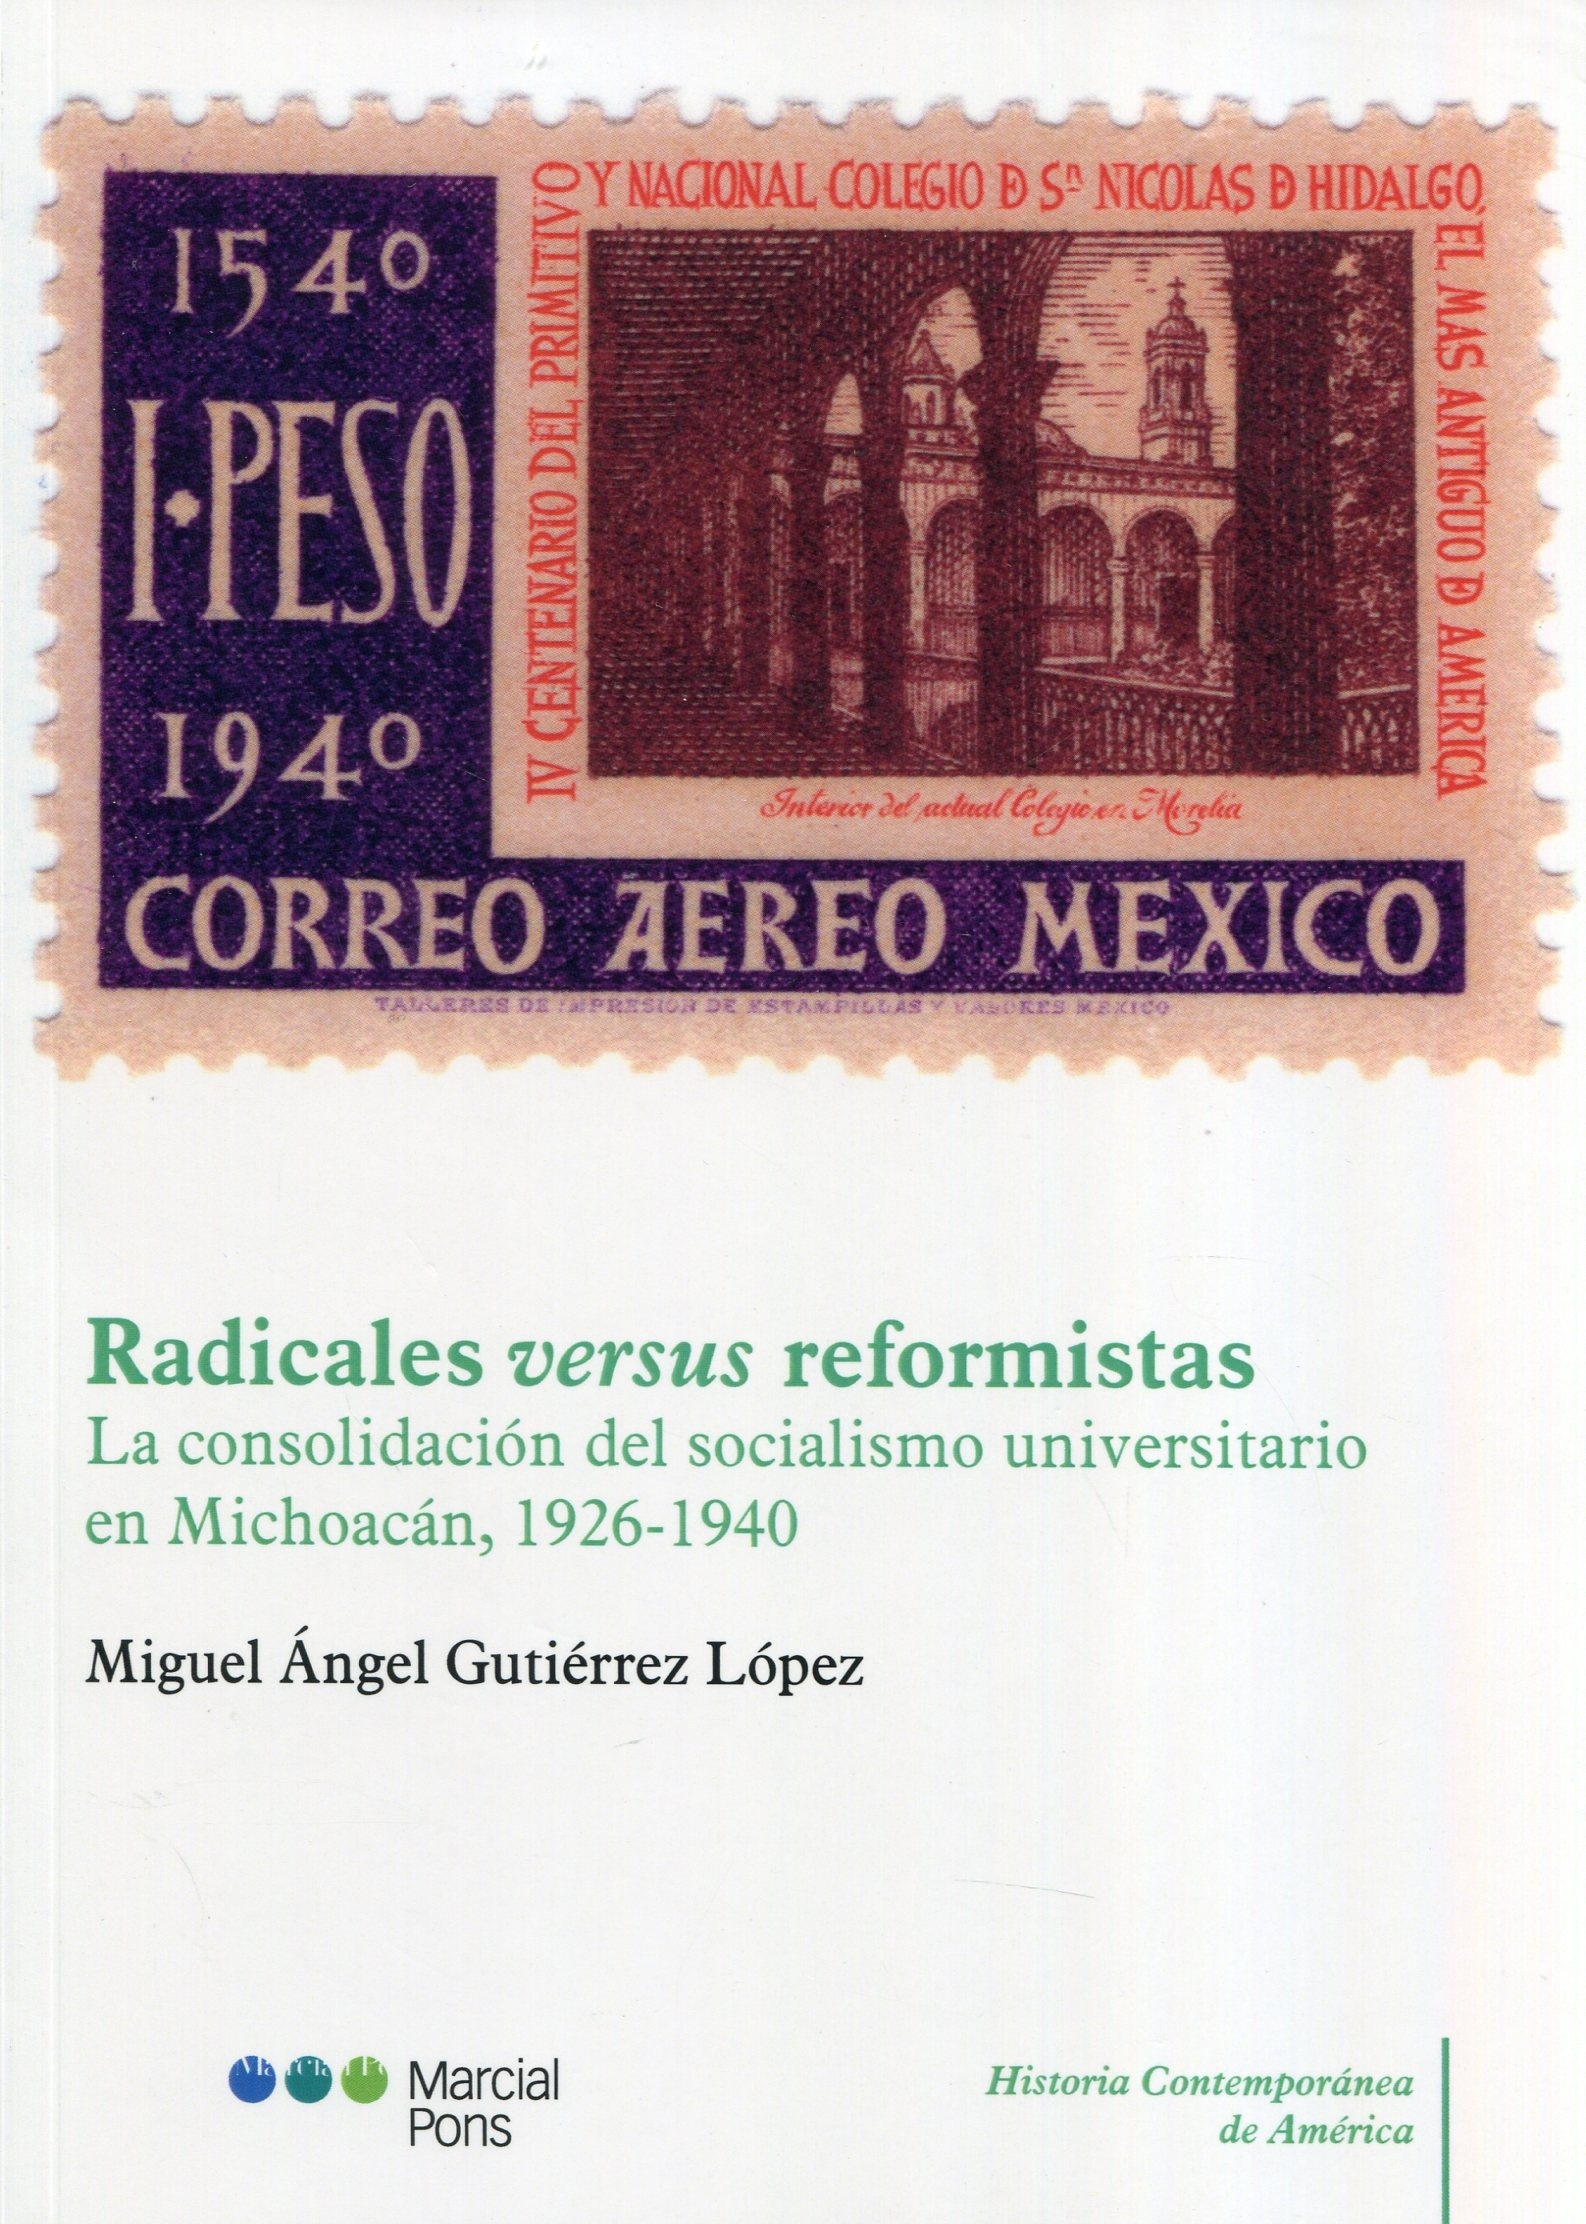 Radicales versus reformistas "La consolidación del socialismo universitario en Michoacán, 1926-1940"